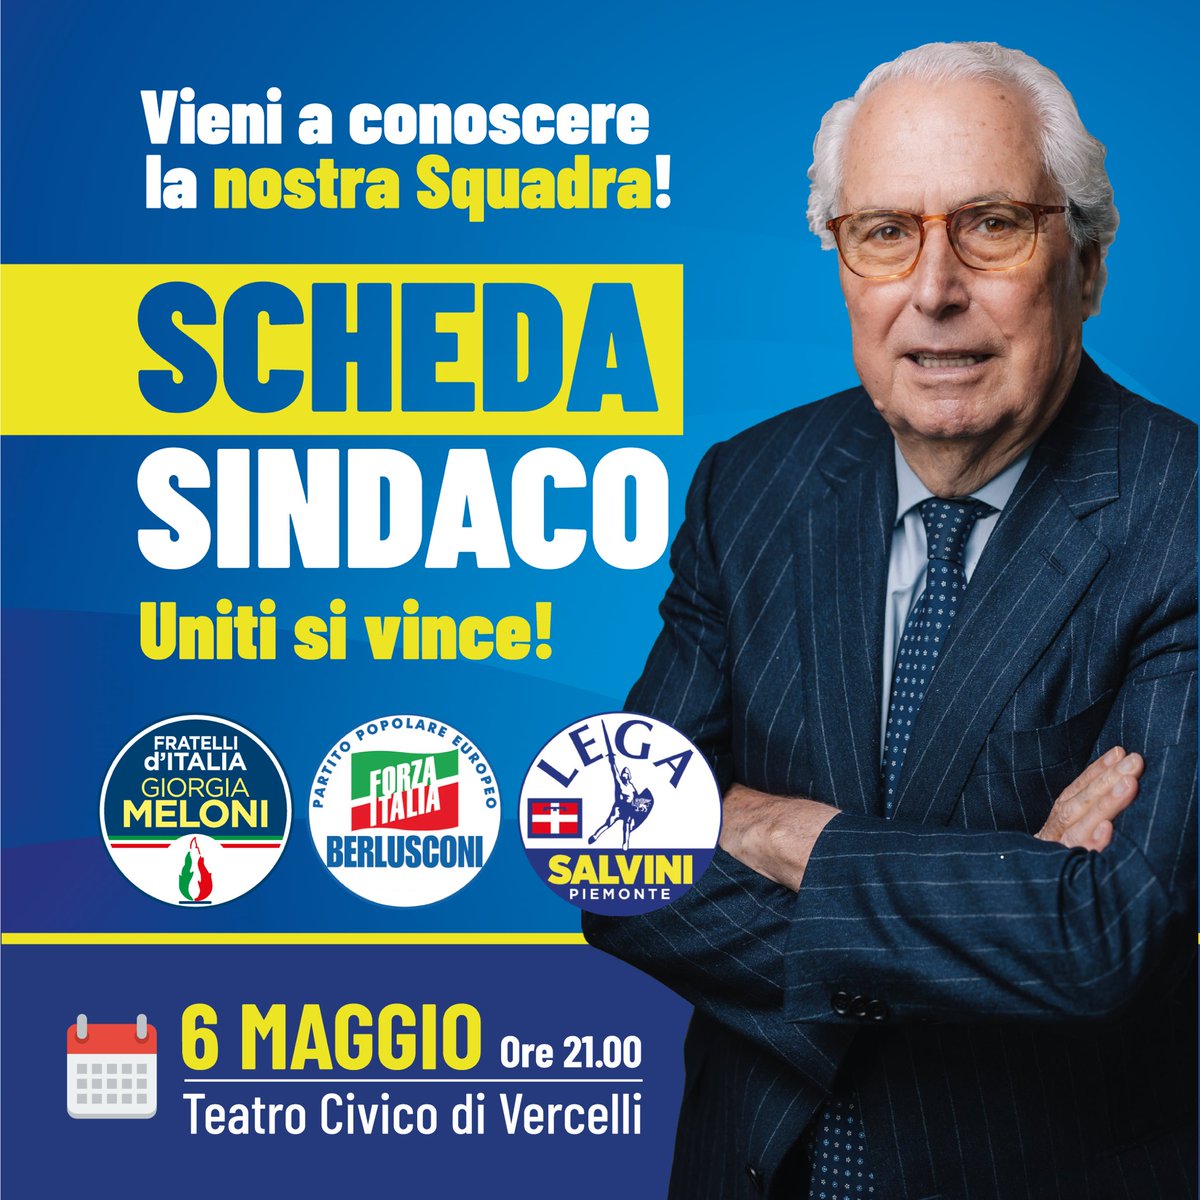 Questa sera al Teatro Civico di #Vercelli alle ore 21.00, la presentazione ufficiale dell’Avv.Roberto #Scheda, candidato Sindaco per la Città di Vercelli!   Forza Roberto! #unitisivince #schedasindaco #lega